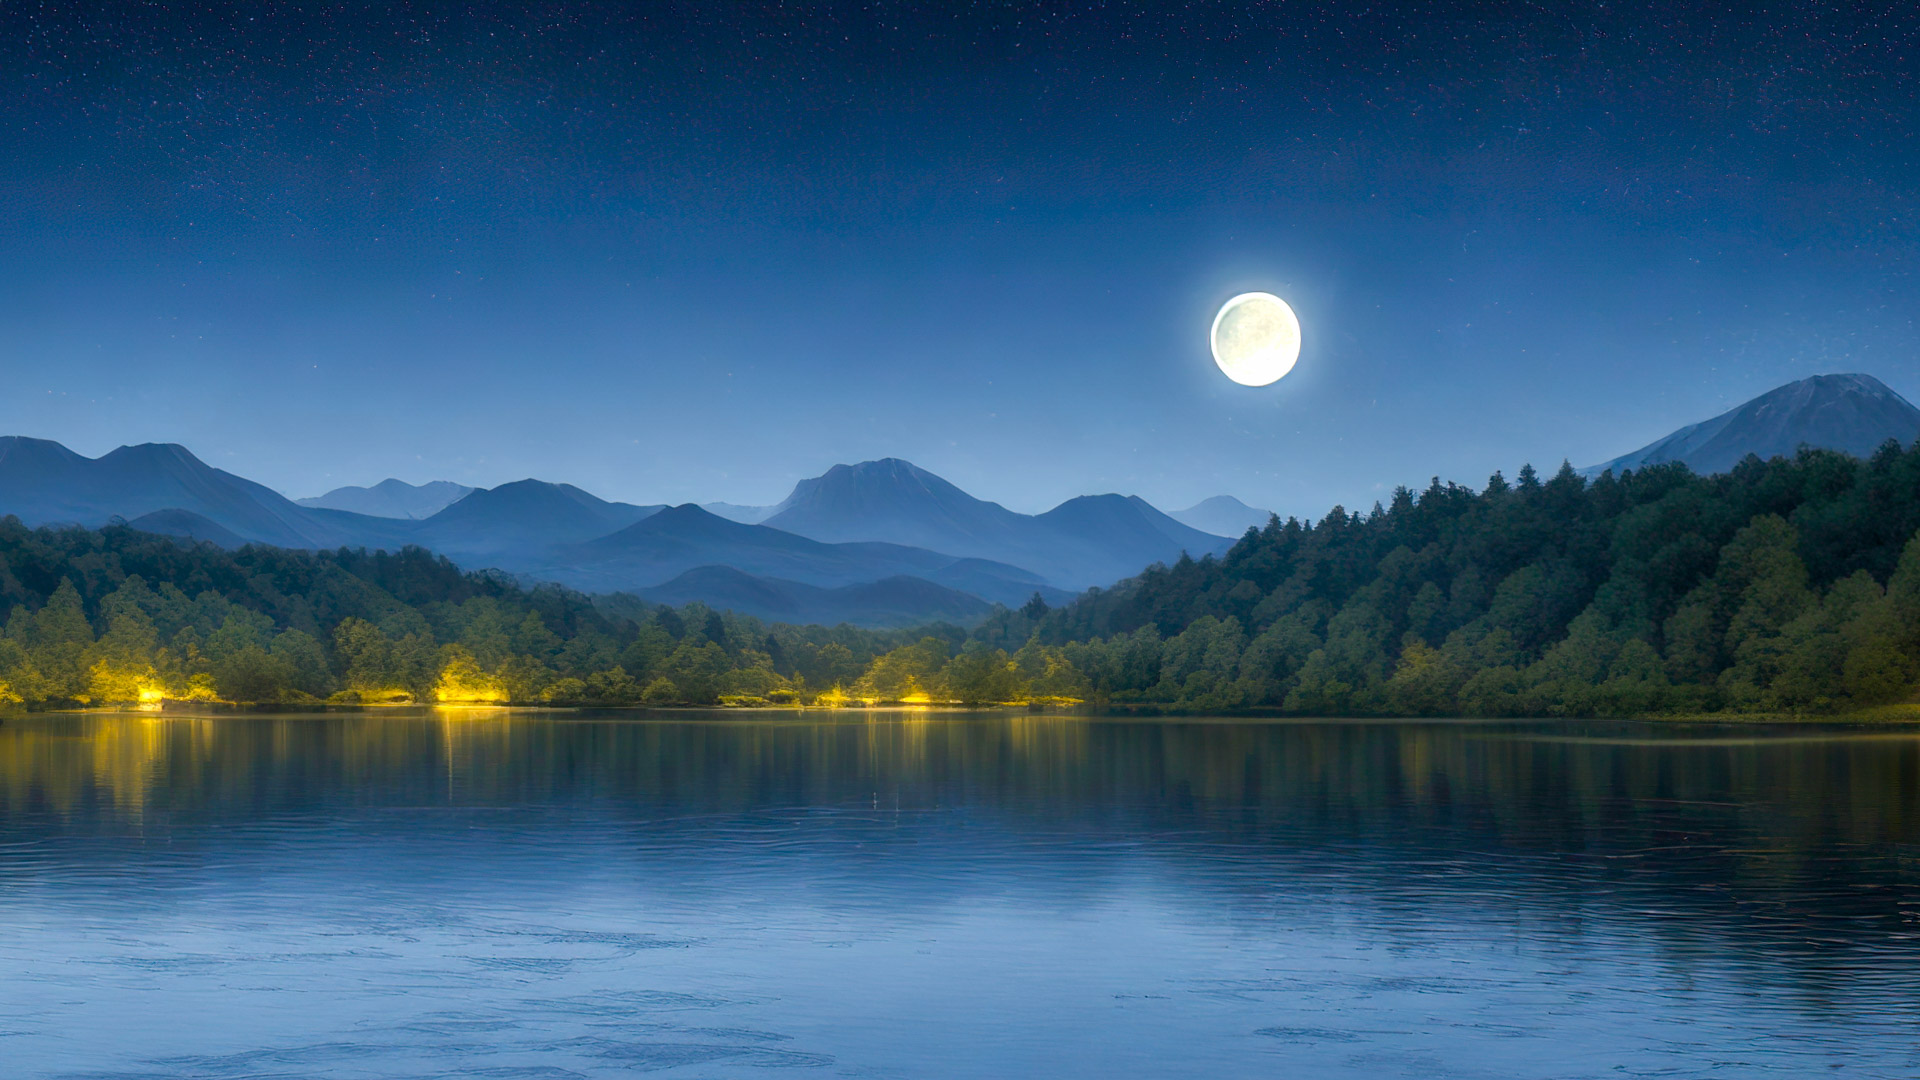 Transformez l'écran de votre PC avec notre fond d'écran de paysage en 1920x1080 HD, mettant en scène une scène paisible et sereine au bord d'un lac sous un ciel étoilé, avec une pleine lune se reflétant à la surface de l'eau.